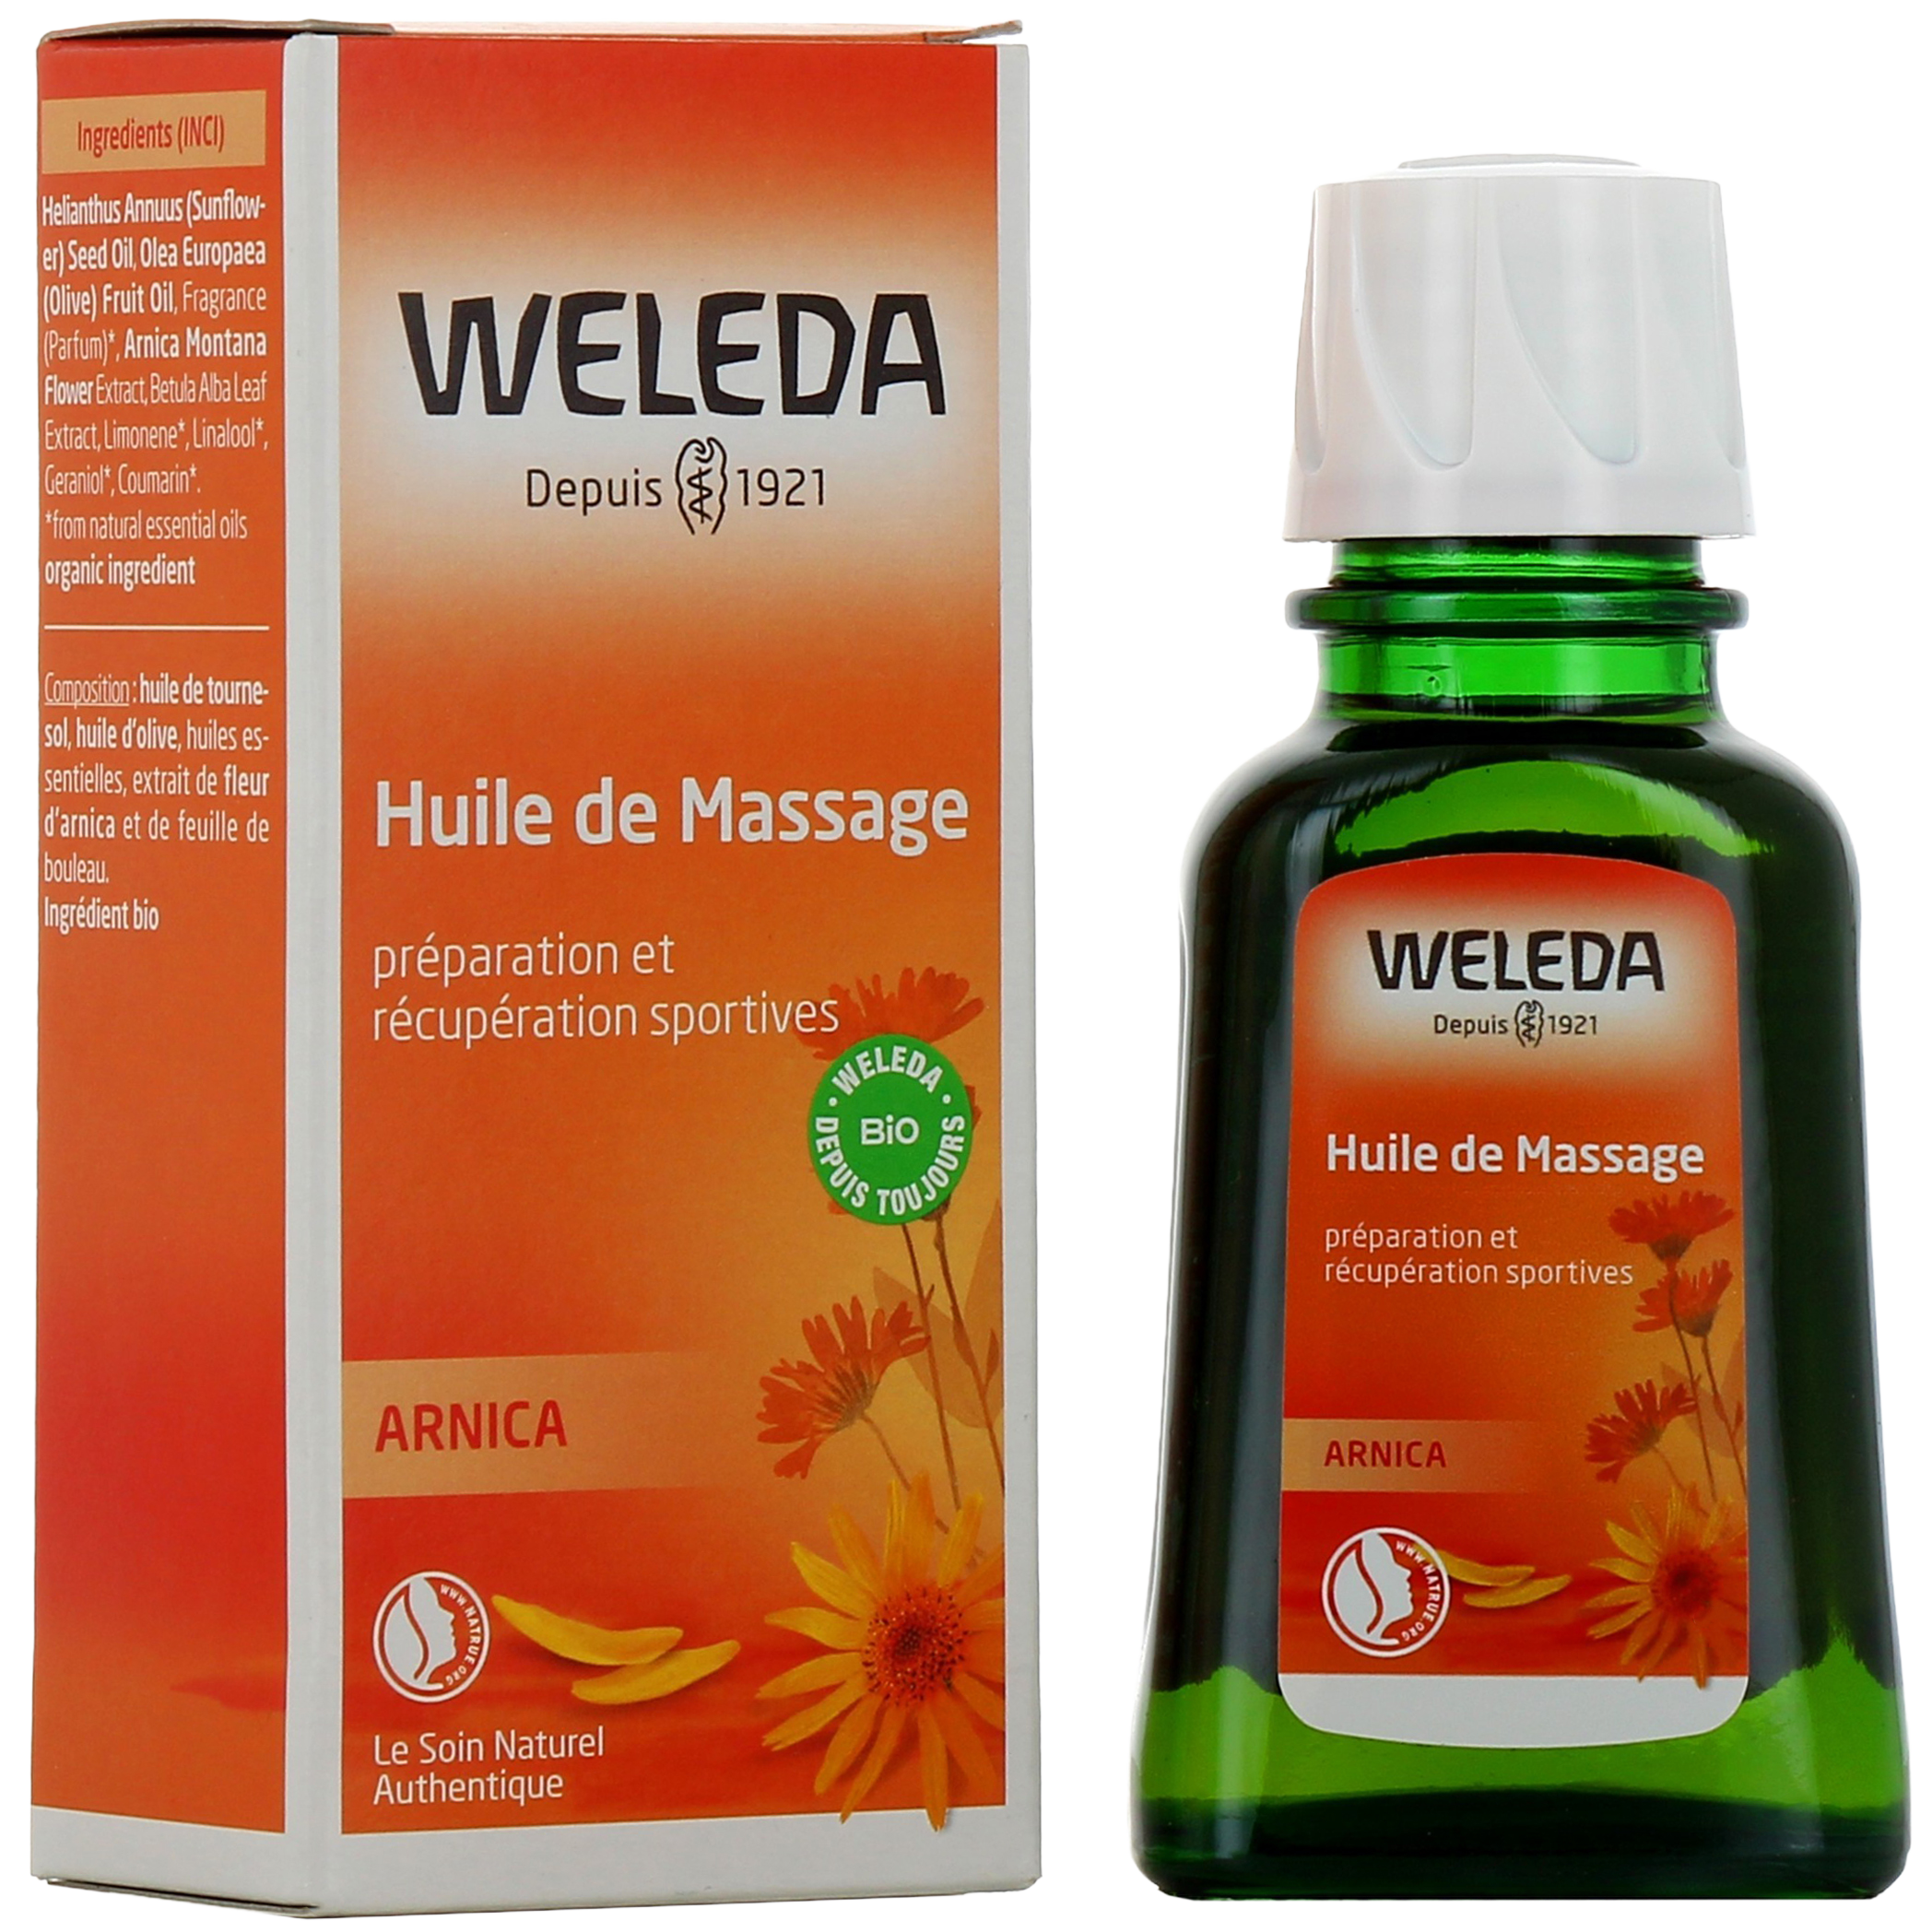 Huile de Massage à l'Arnica - Weleda